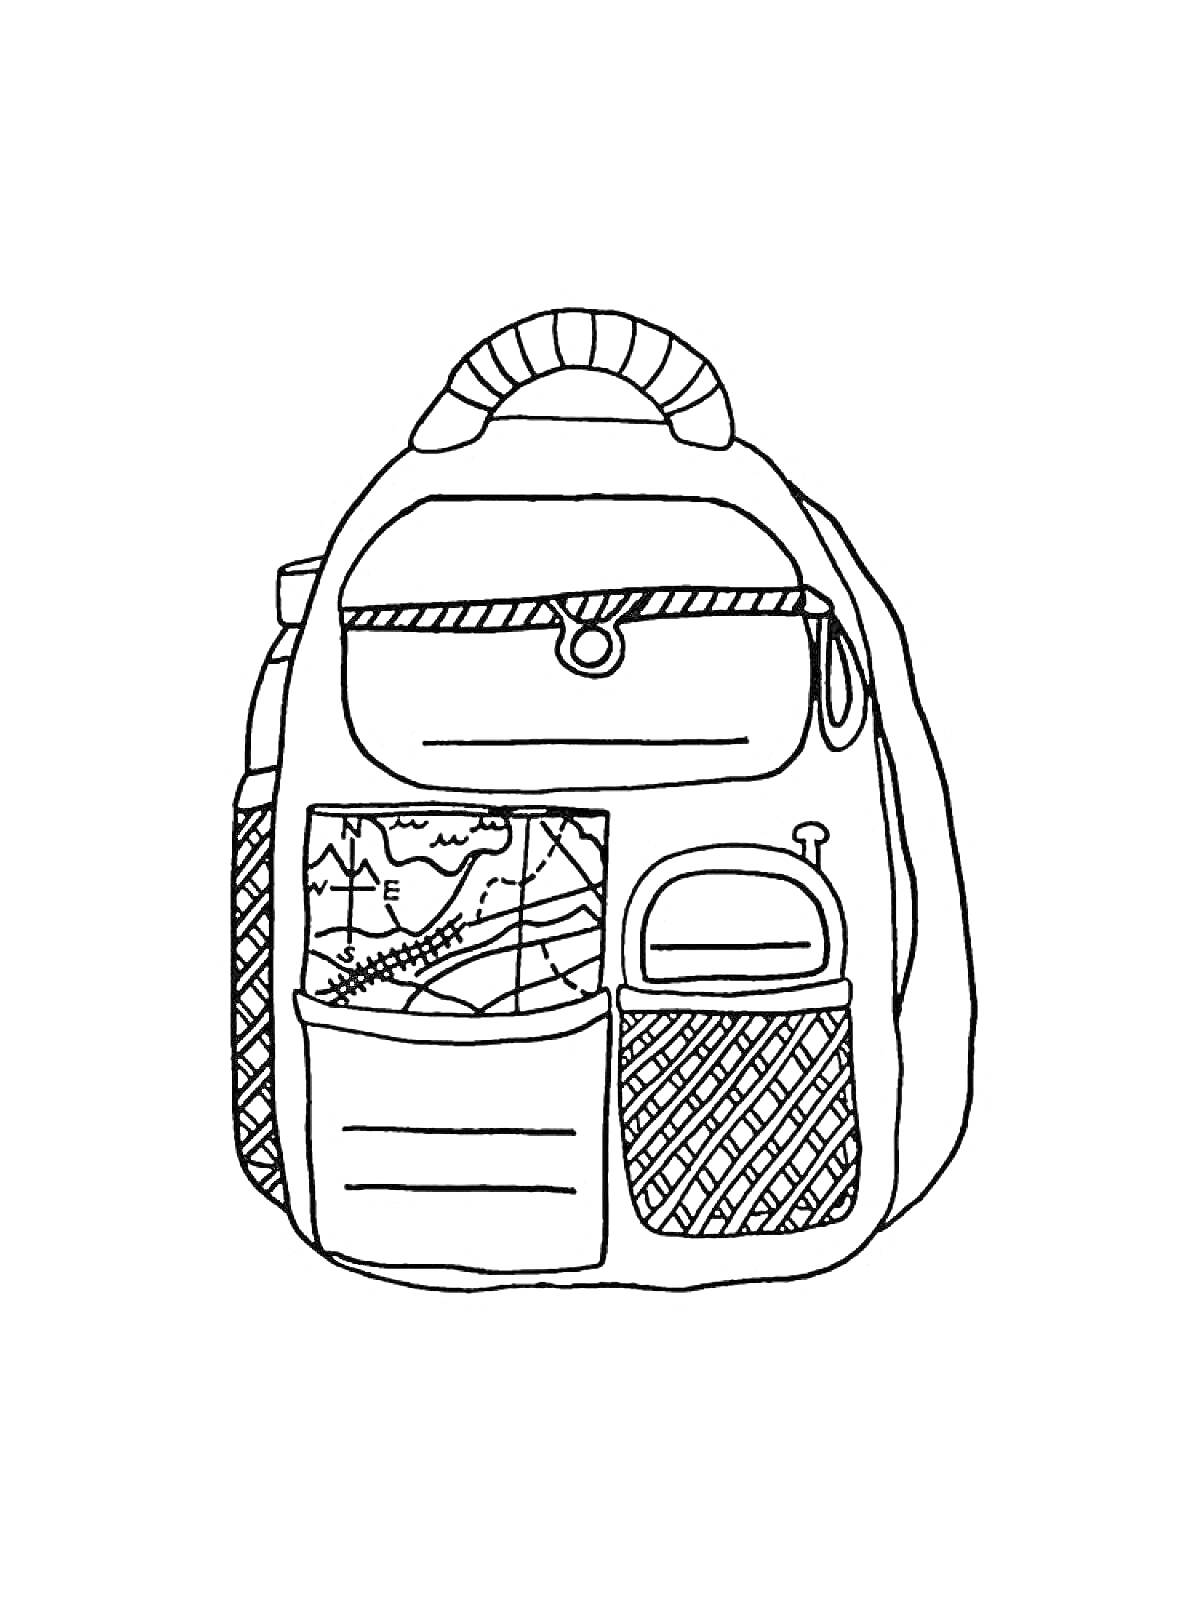 Раскраска Рюкзак с клапаном, ручкой, тремя внешними карманами и рисунком самолета